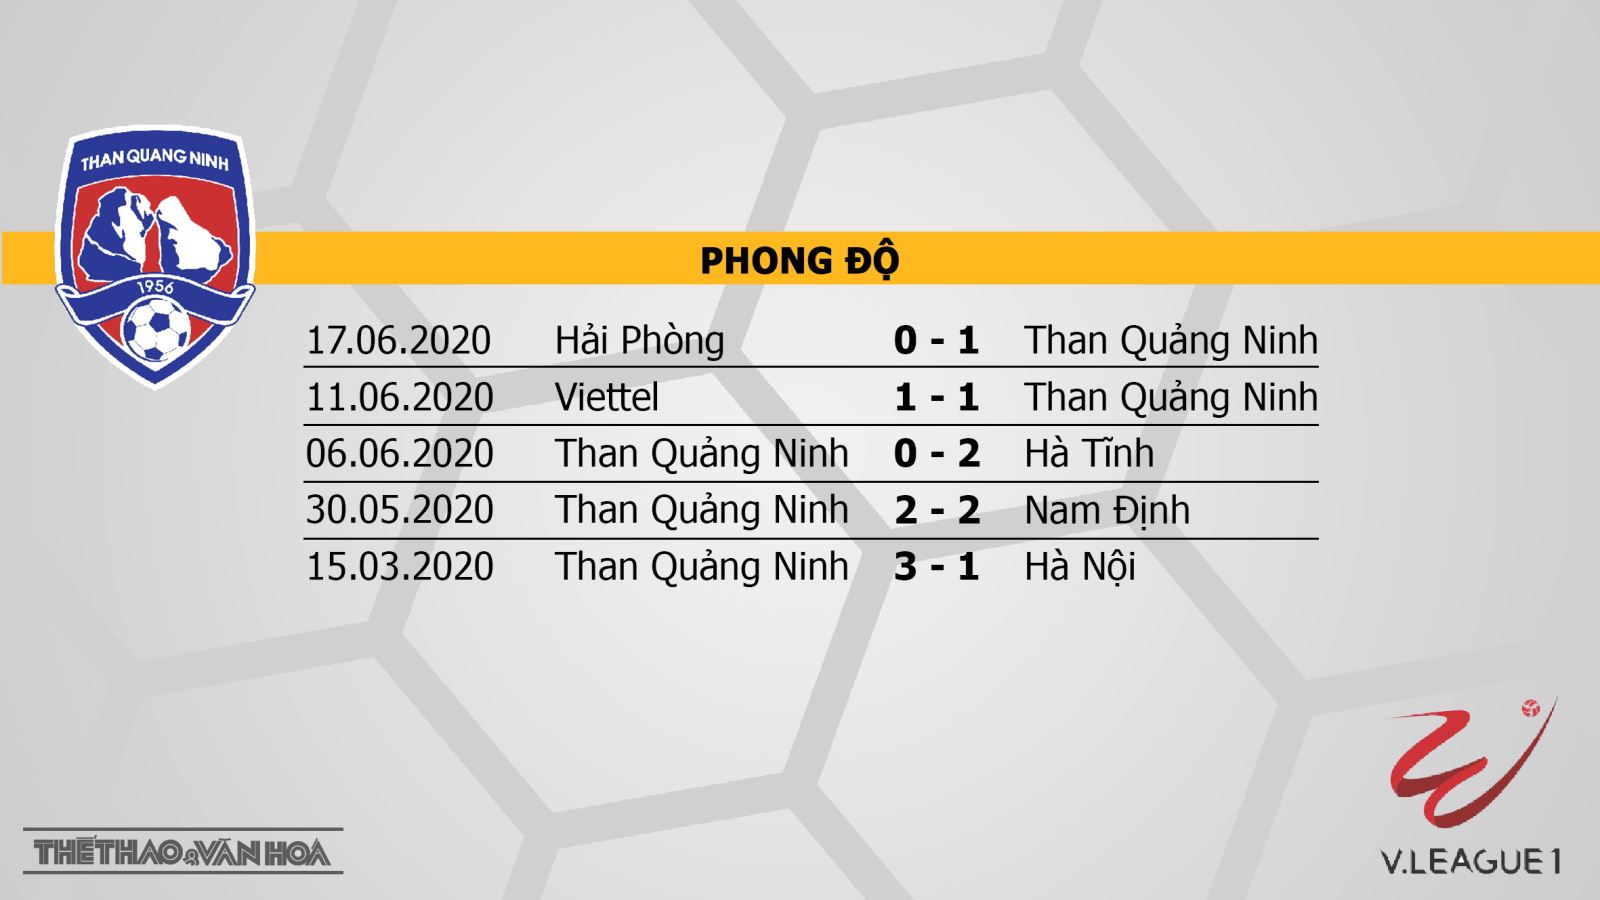 Than Quảng Ninh - Quảng Nam, Than Quảng Ninh, Quảng Nam, trực tiếp bóng đá, bong da, dự đoán bóng đá, dự đoán, nhận định, V-League